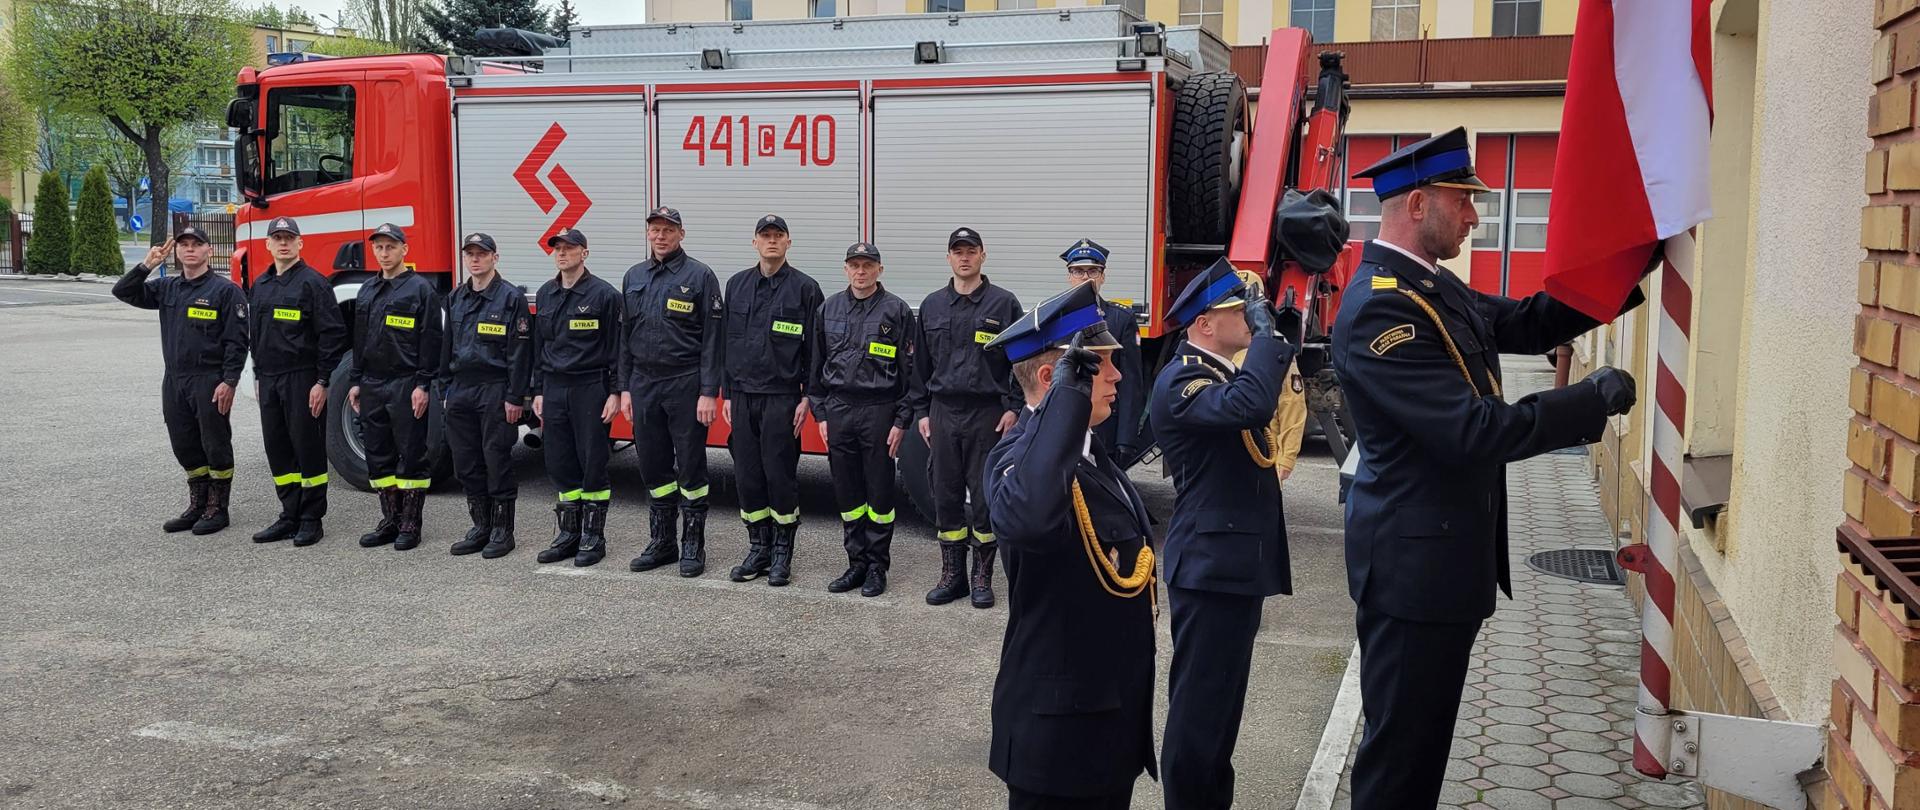 Strażacy w czarnych mundurach stojący w szeregu na utwardzonym placu. Na pierwszym planie jeden z nich wciąga biało-czerwoną flagę na maszt. W tle czerwono-srebrny strażacki samochód.